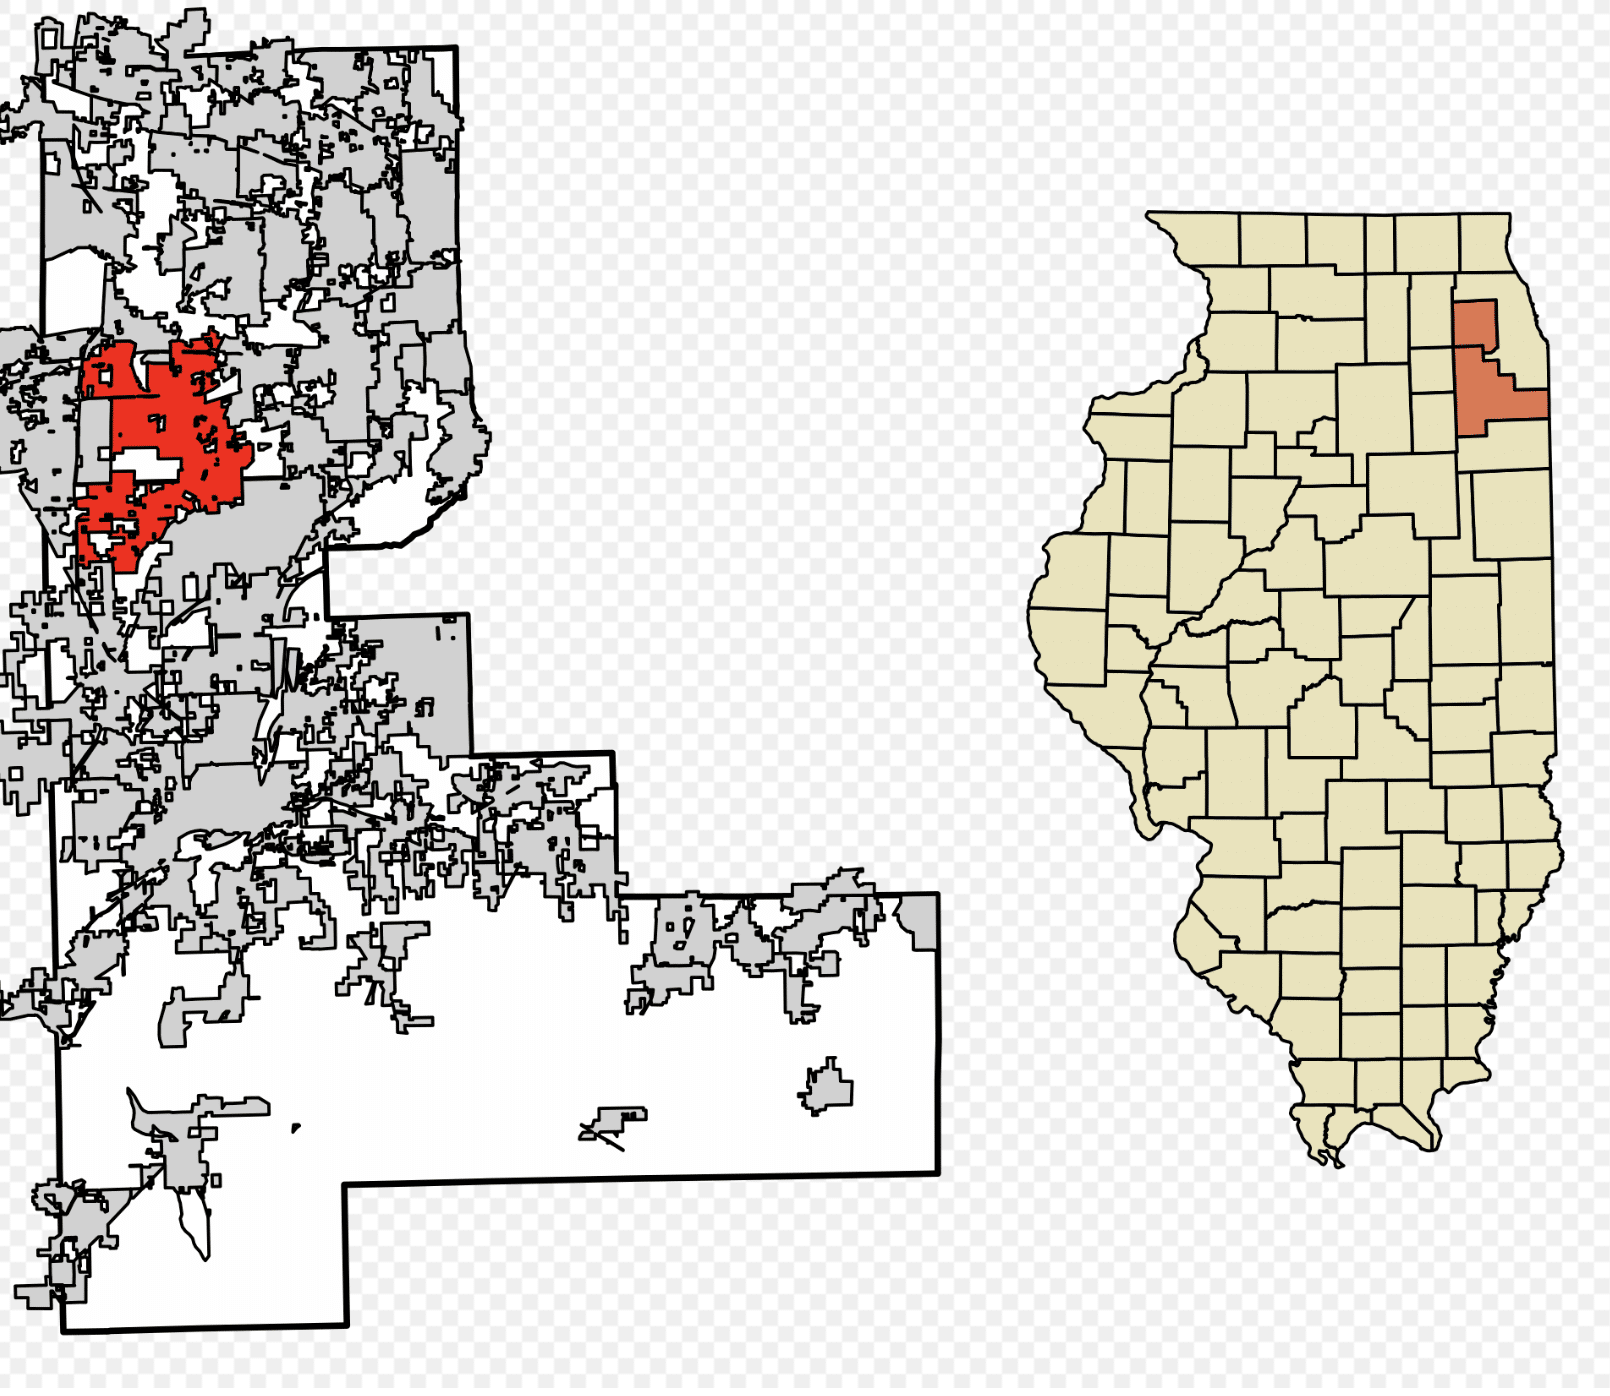 Naperville location on Illinois map